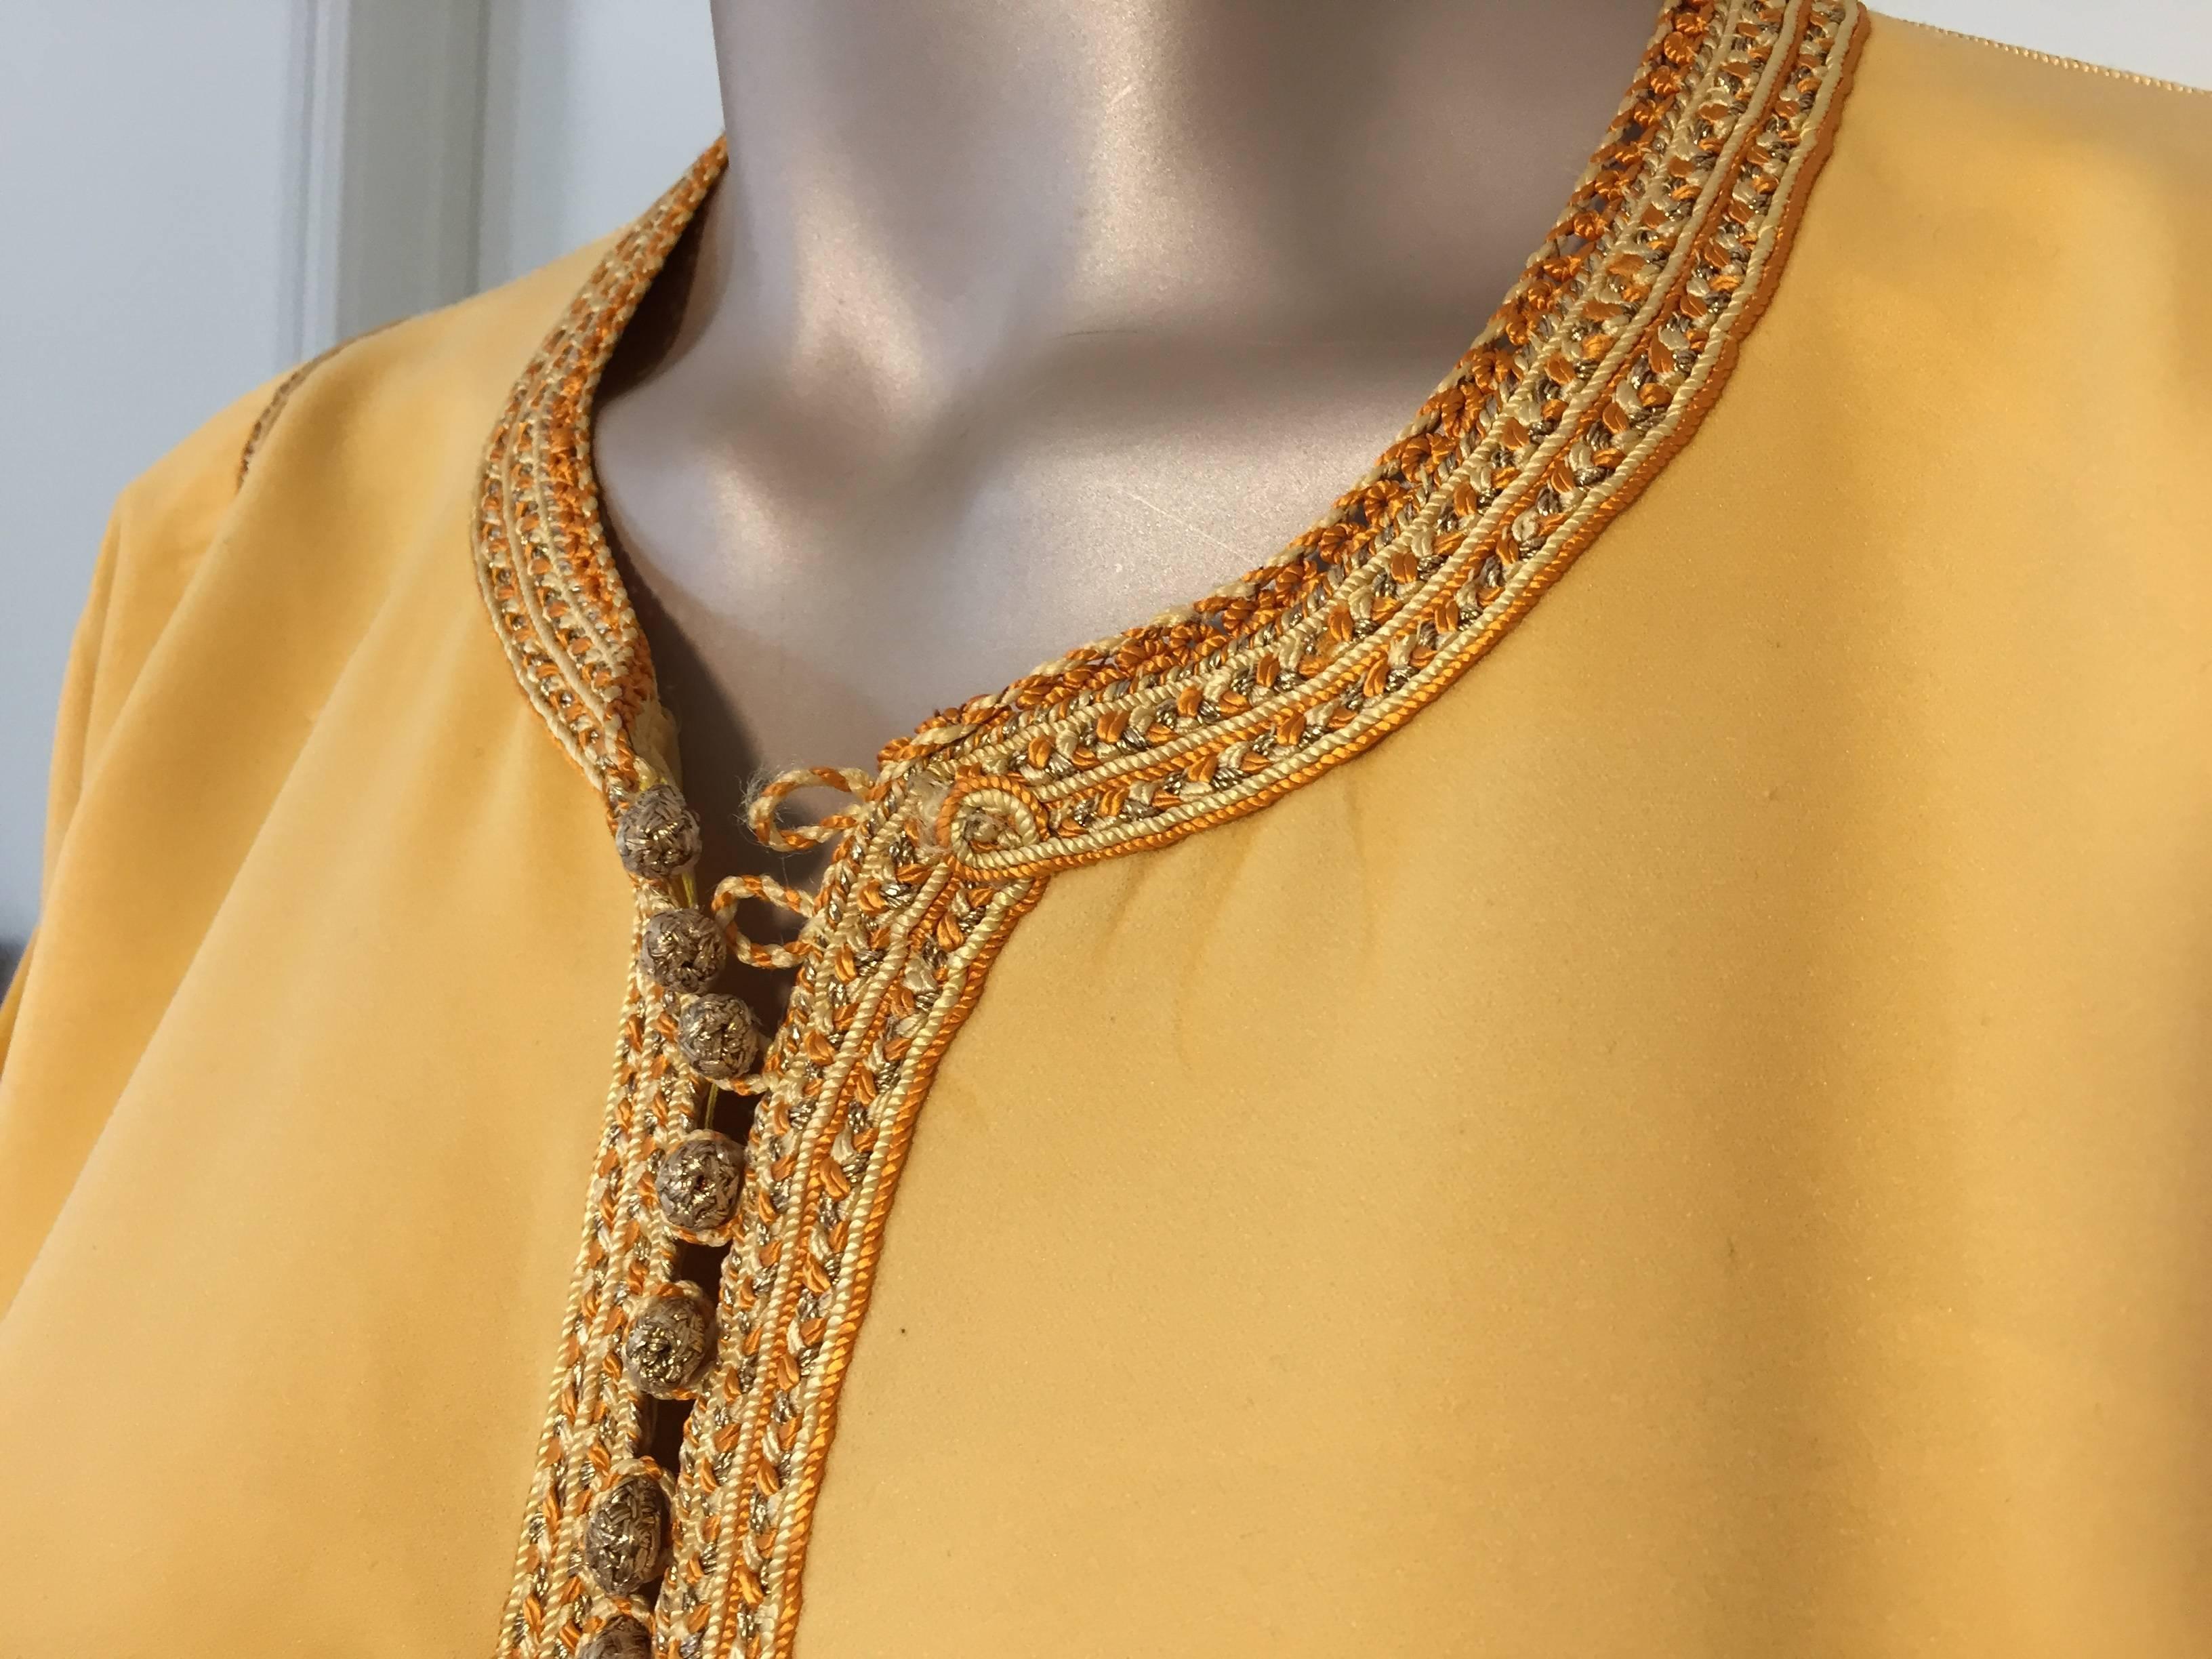 Élégant caftan marocain de couleur or jaune brodé d'une bordure dorée,
vers les années 1960.
Ce long kaftan maxi mauresque est brodé et agrémenté de motifs traditionnels en or.
Robe de soirée marocaine du Moyen-Orient unique en son genre, faite sur